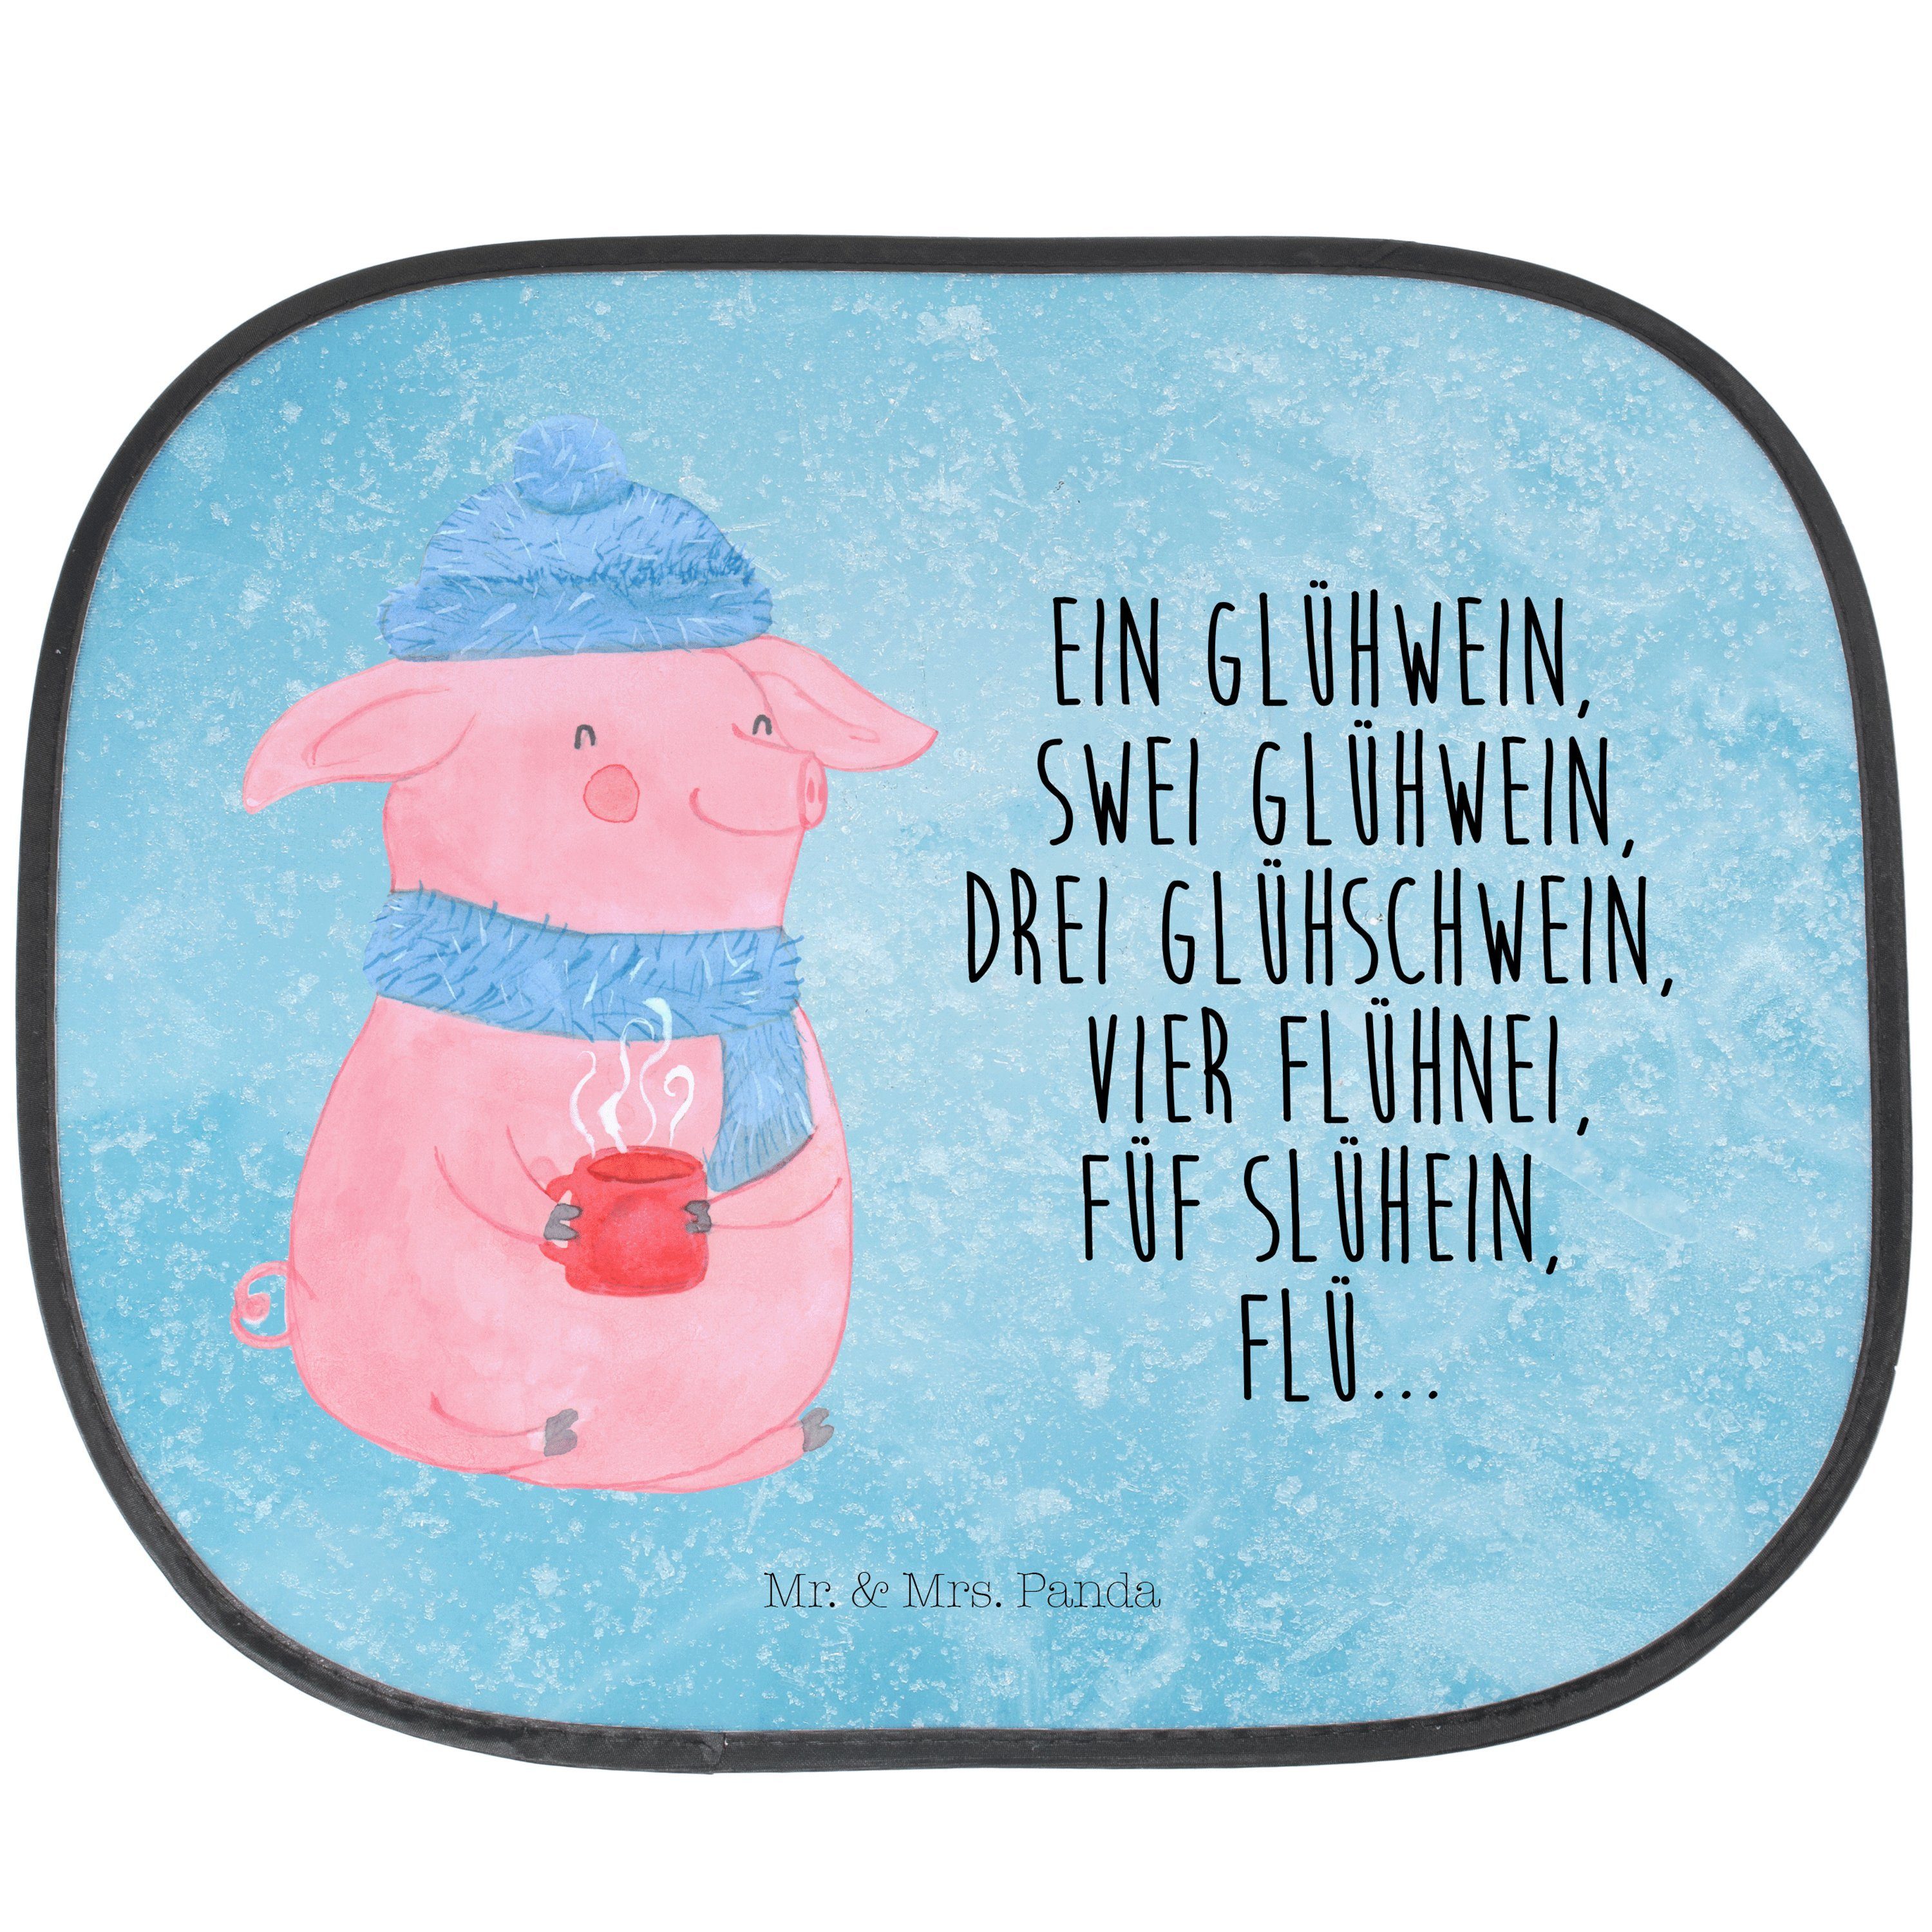 Sonnenschutz Lallelndes Glühschwein - Eisblau - Mr. Sonnensc, Auto & Geschenk, Mrs. Seidenmatt Betrunken, Panda